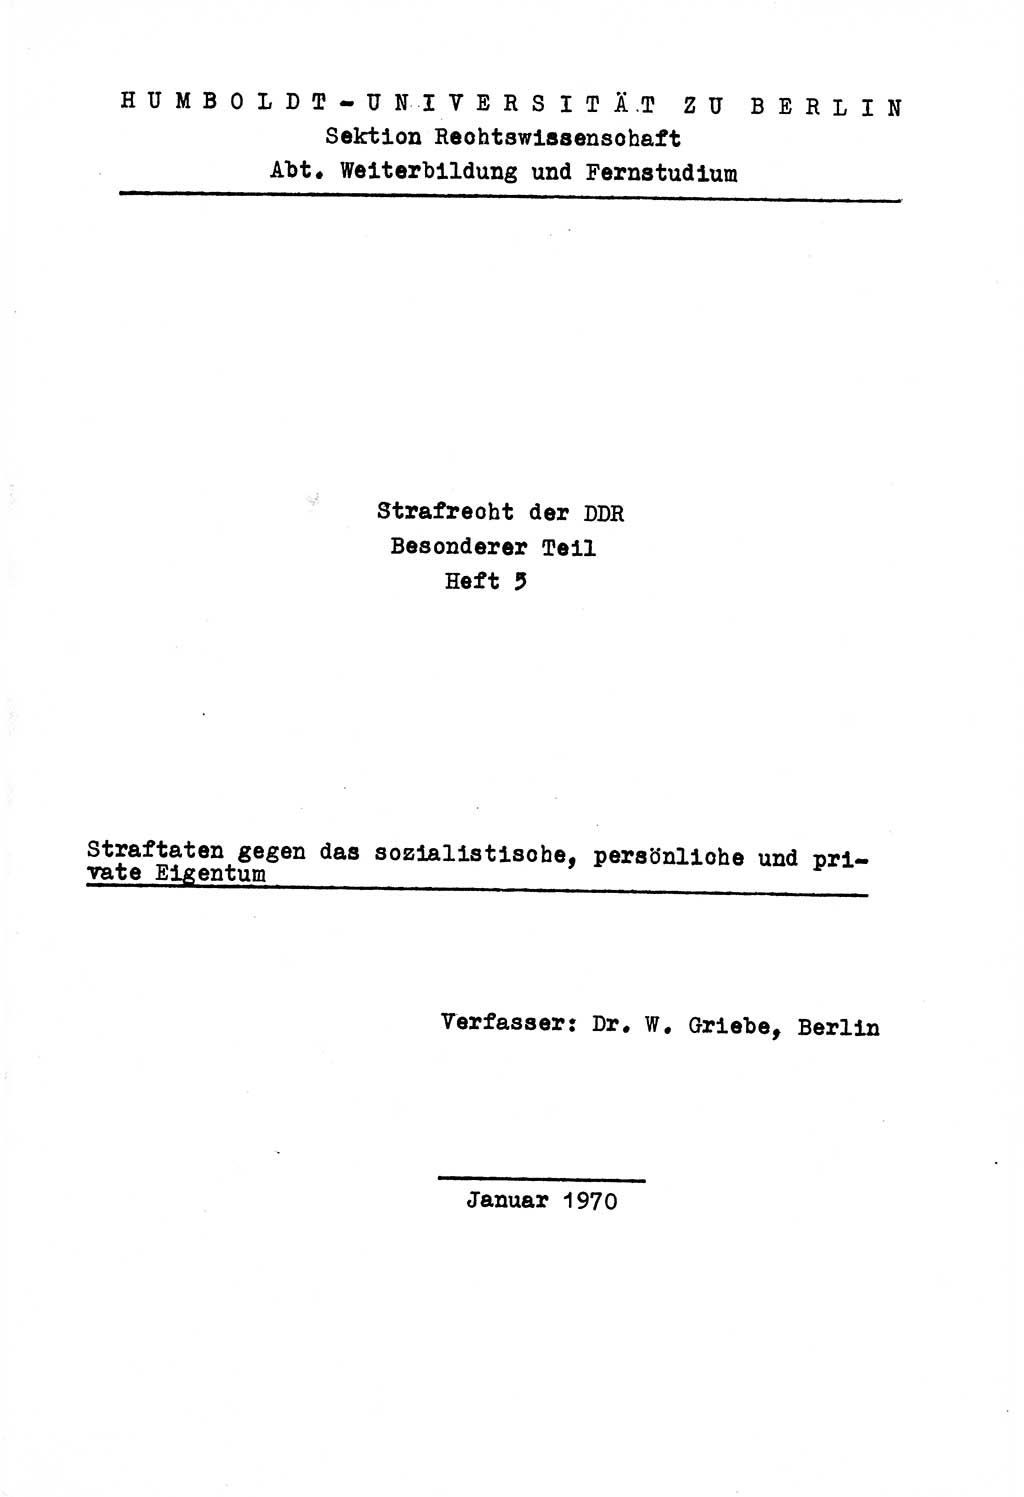 Strafrecht der DDR (Deutsche Demokratische Republik), Besonderer Teil, Lehrmaterial, Heft 5 1970, Seite 1 (Strafr. DDR BT Lehrmat. H. 5 1970, S. 1)